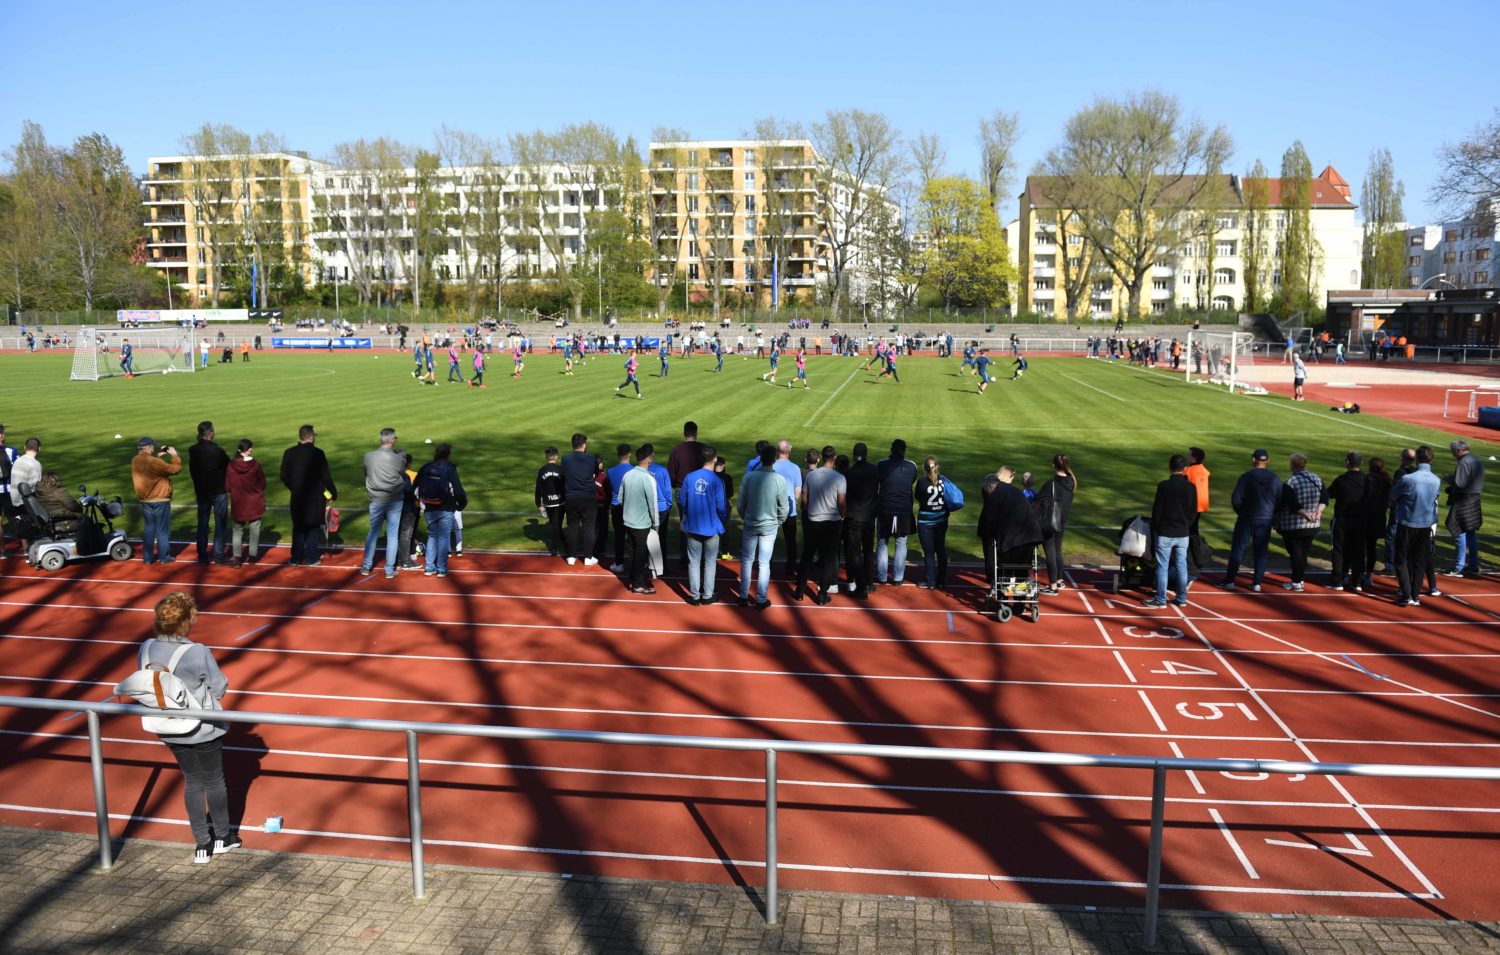 Kieztraining mit Hertha BSC 2019 im Willy-Kressmann-Stadion (bis 2010: Katzbachstadion). Türkiyemspor hat hier den Heimvorteil. Foto: Imago Images/Matthias Koch